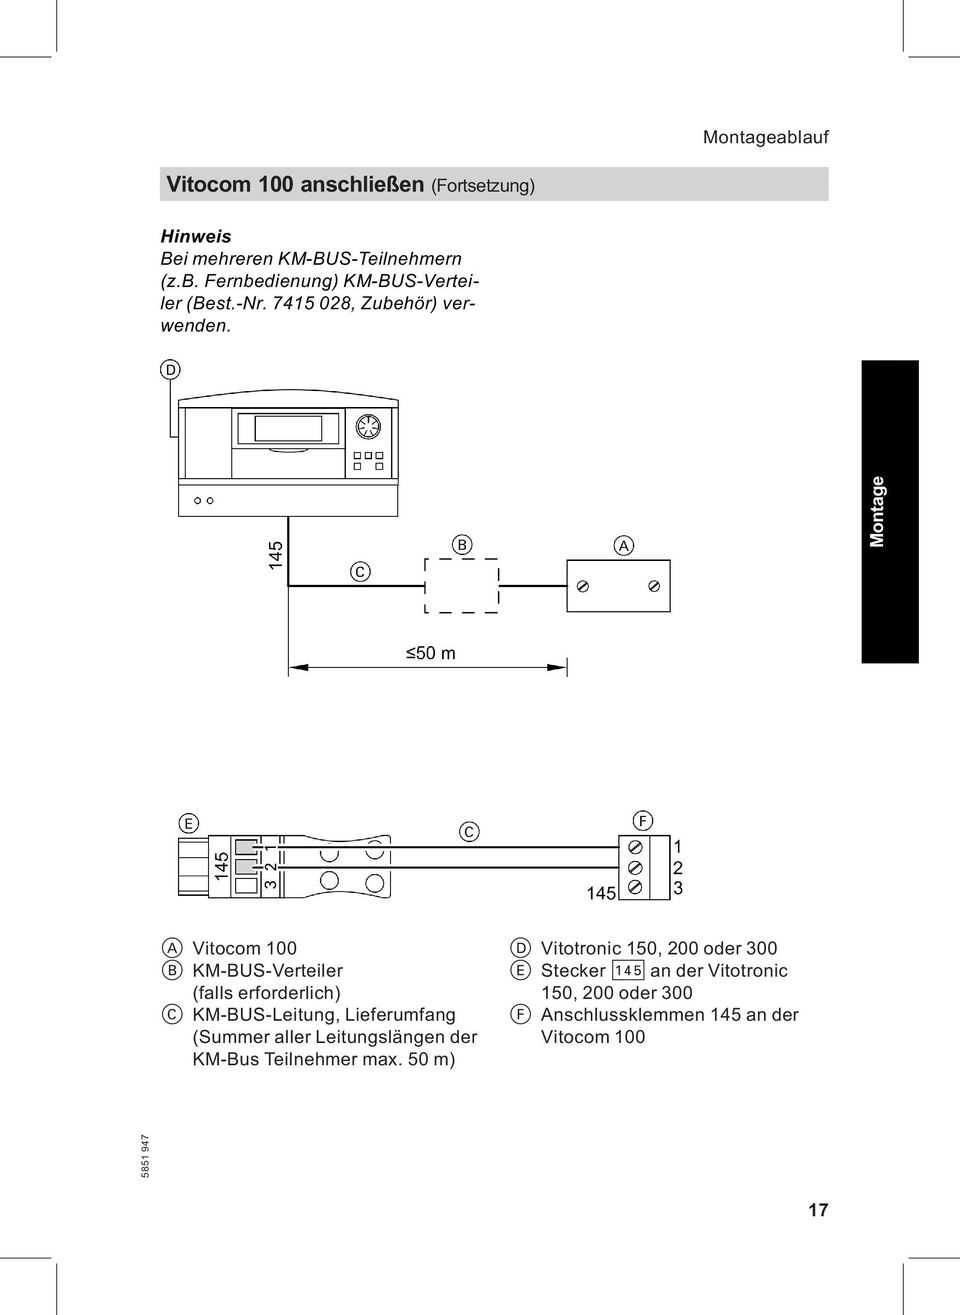 A Vitocom 100 B KM-BUS-Verteiler (falls erforderlich) C KM-BUS-Leitung, Lieferumfang (Summer aller